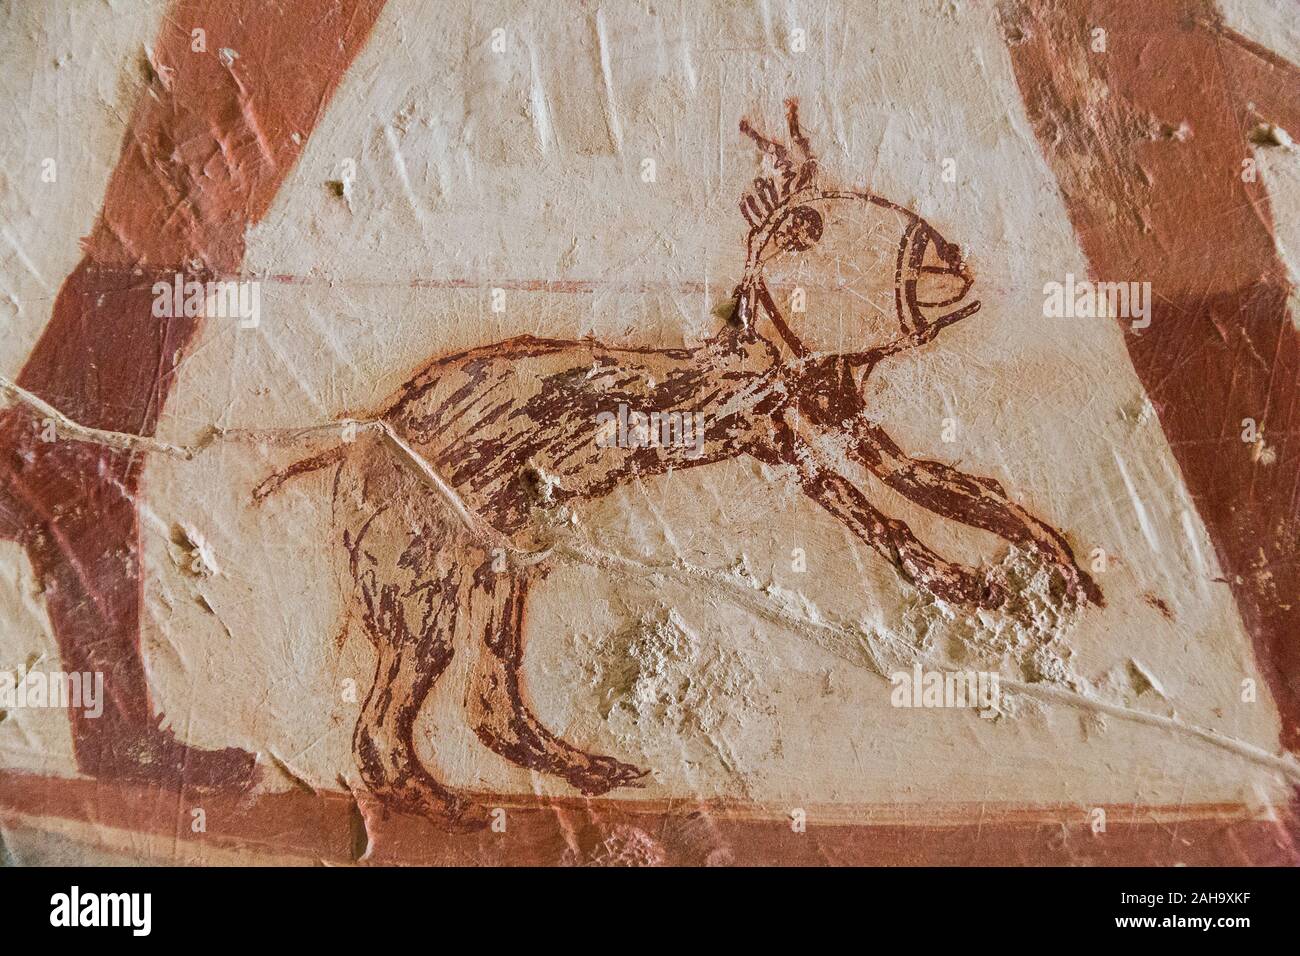 UNESCO World Heritage, Thèbes en Egypte, la vallée des Nobles, tombe de Userhat (numéro 56). Un étrange graffito (un chien ?) sur une scène de pêche classique. Banque D'Images